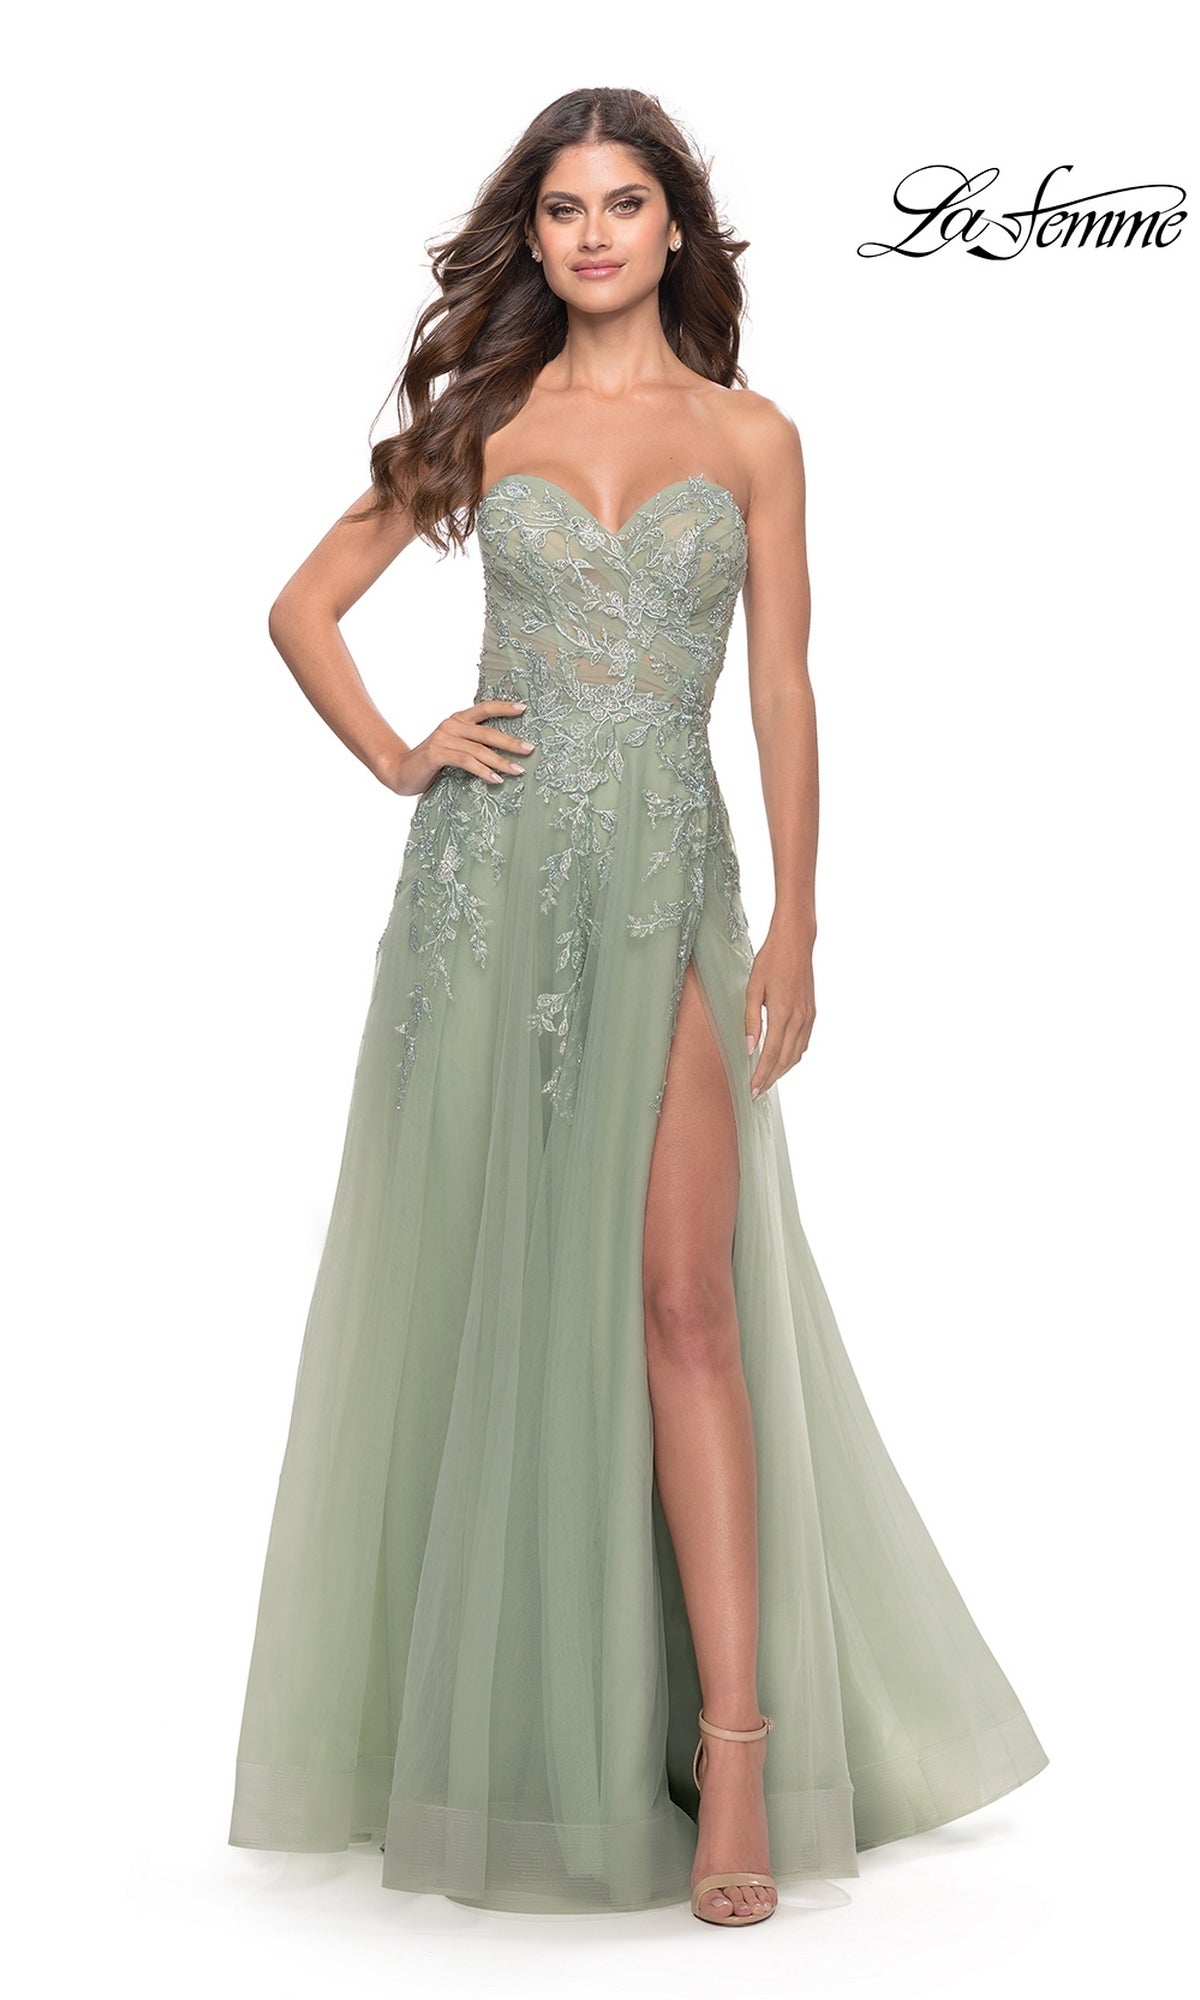 La Femme Strapless Sweetheart Long Prom Dress31363